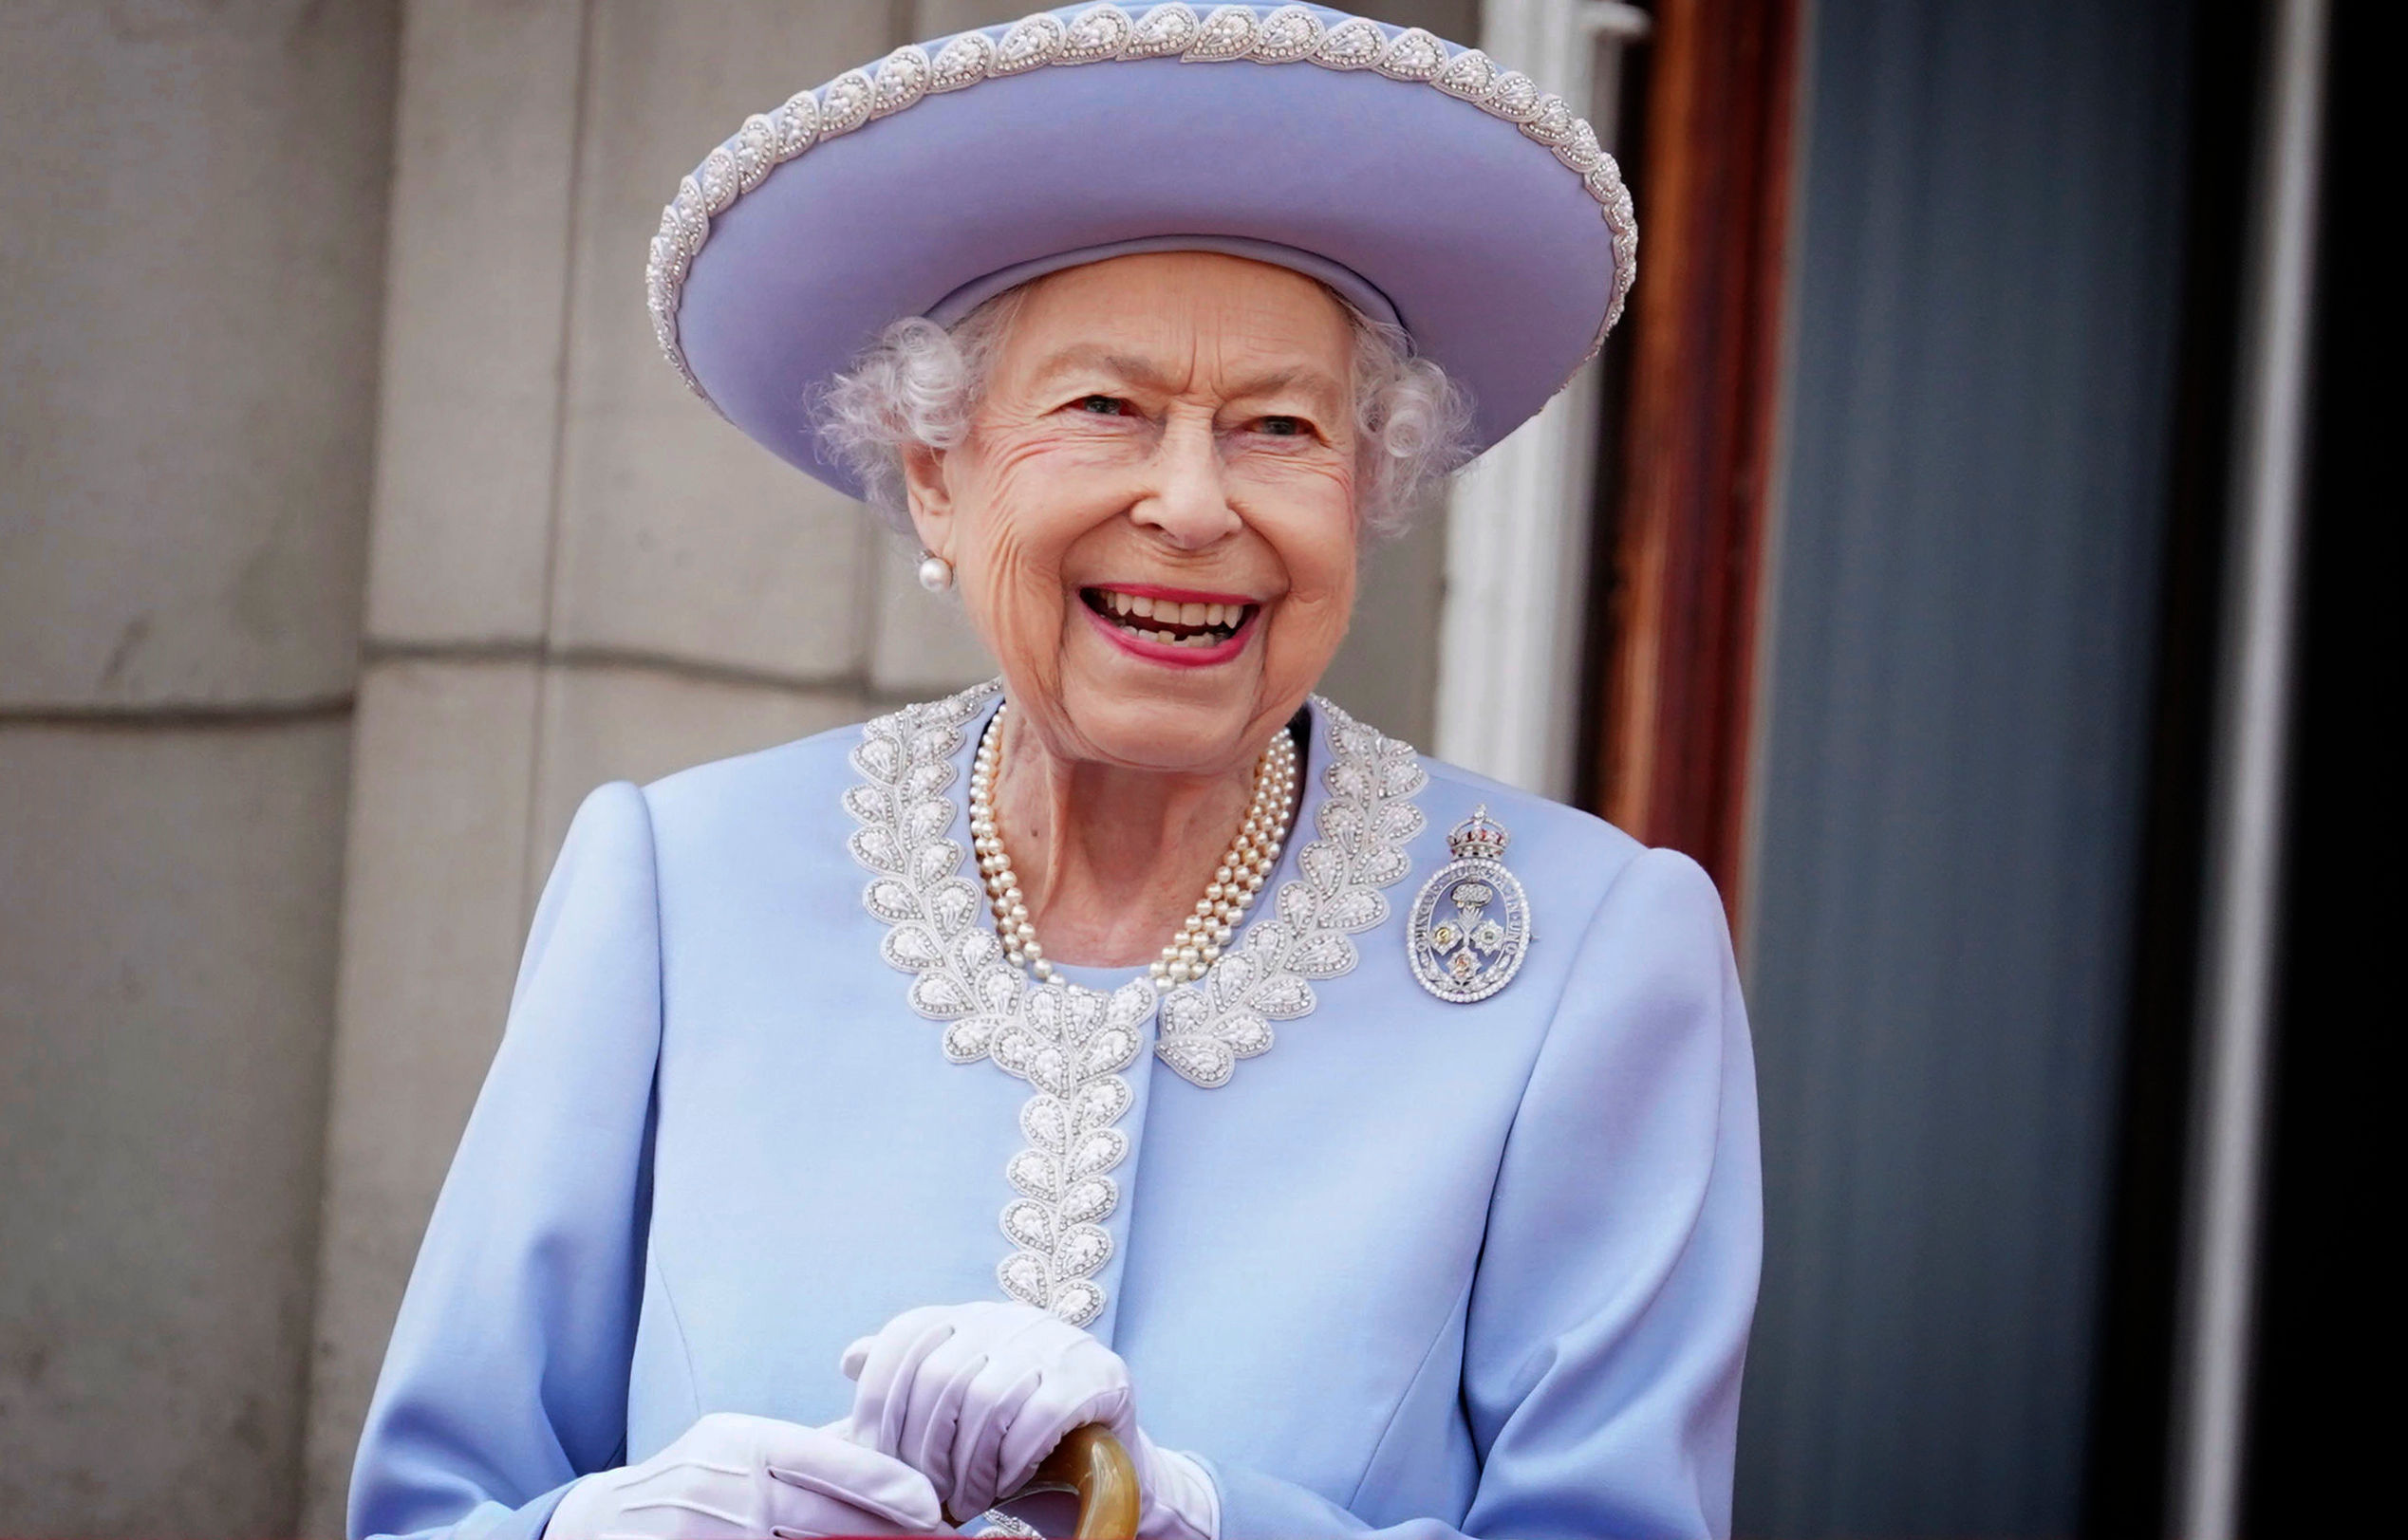 How did Queen Elizabeth II die?